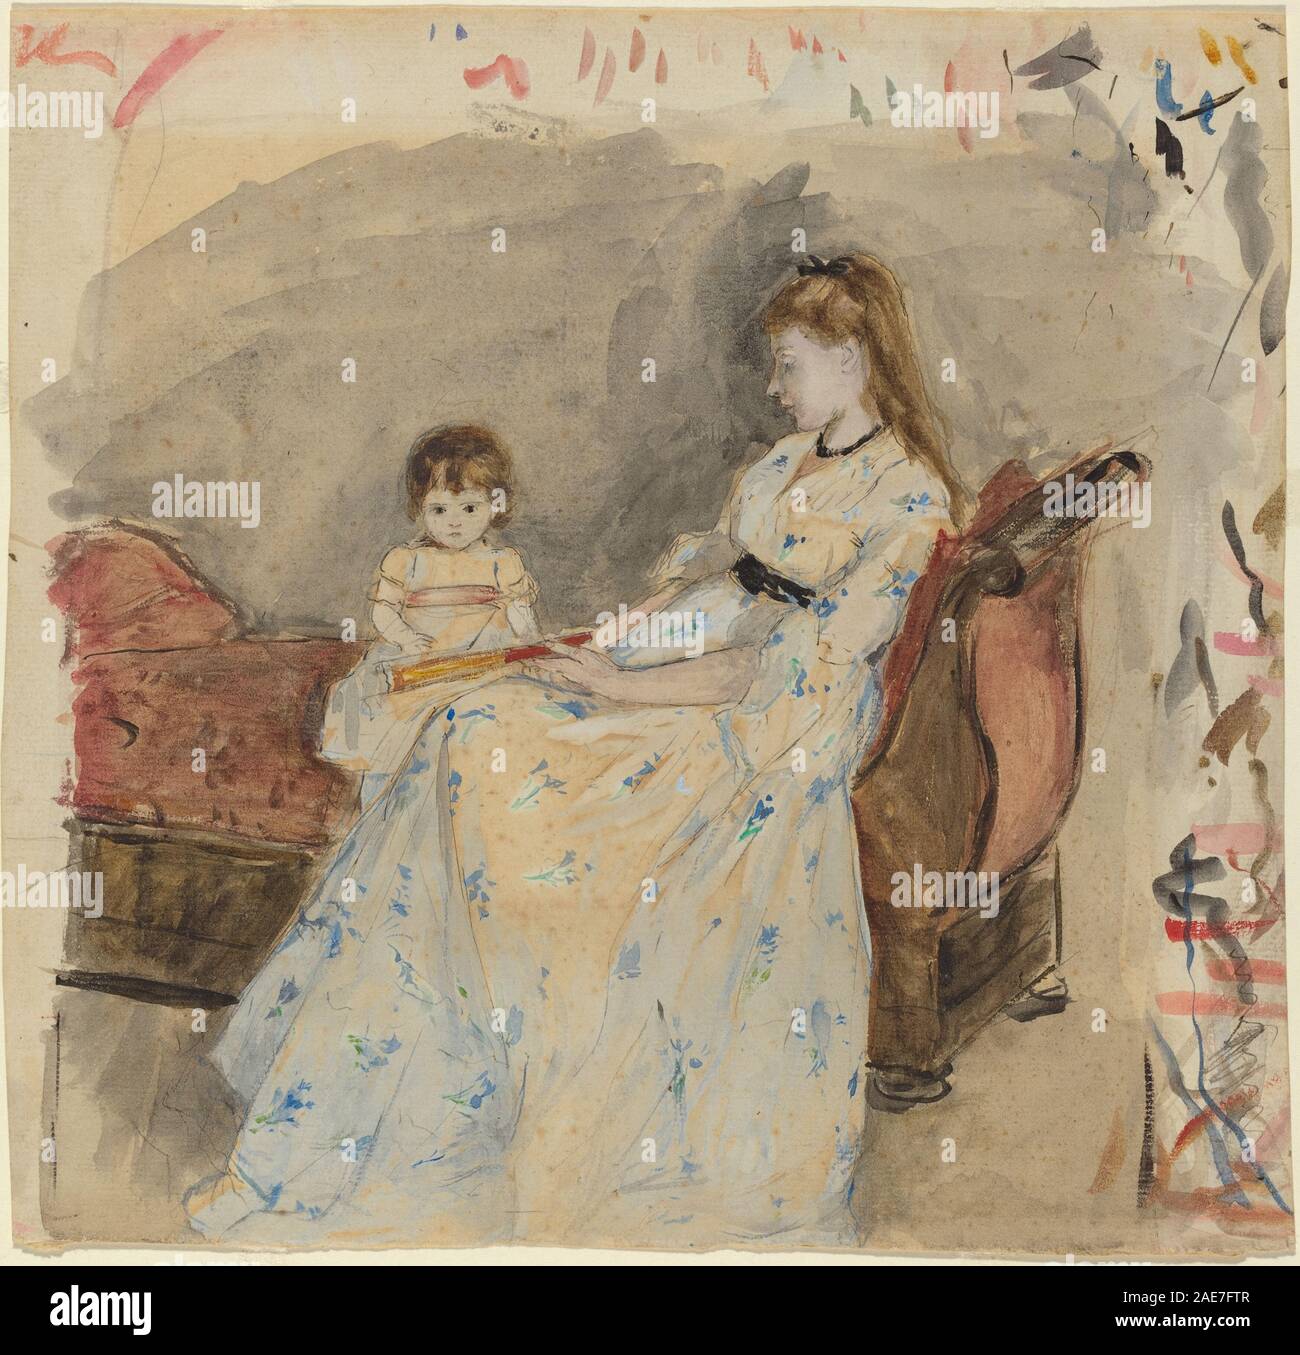 Des Künstlers Schwester, EDMA, mit Ihrer Tochter, Jeanne; 1872 Datum Berthe Morisot, die Schwester des Künstlers, EDMA, mit Ihrer Tochter, Jeanne, 1872 Stockfoto